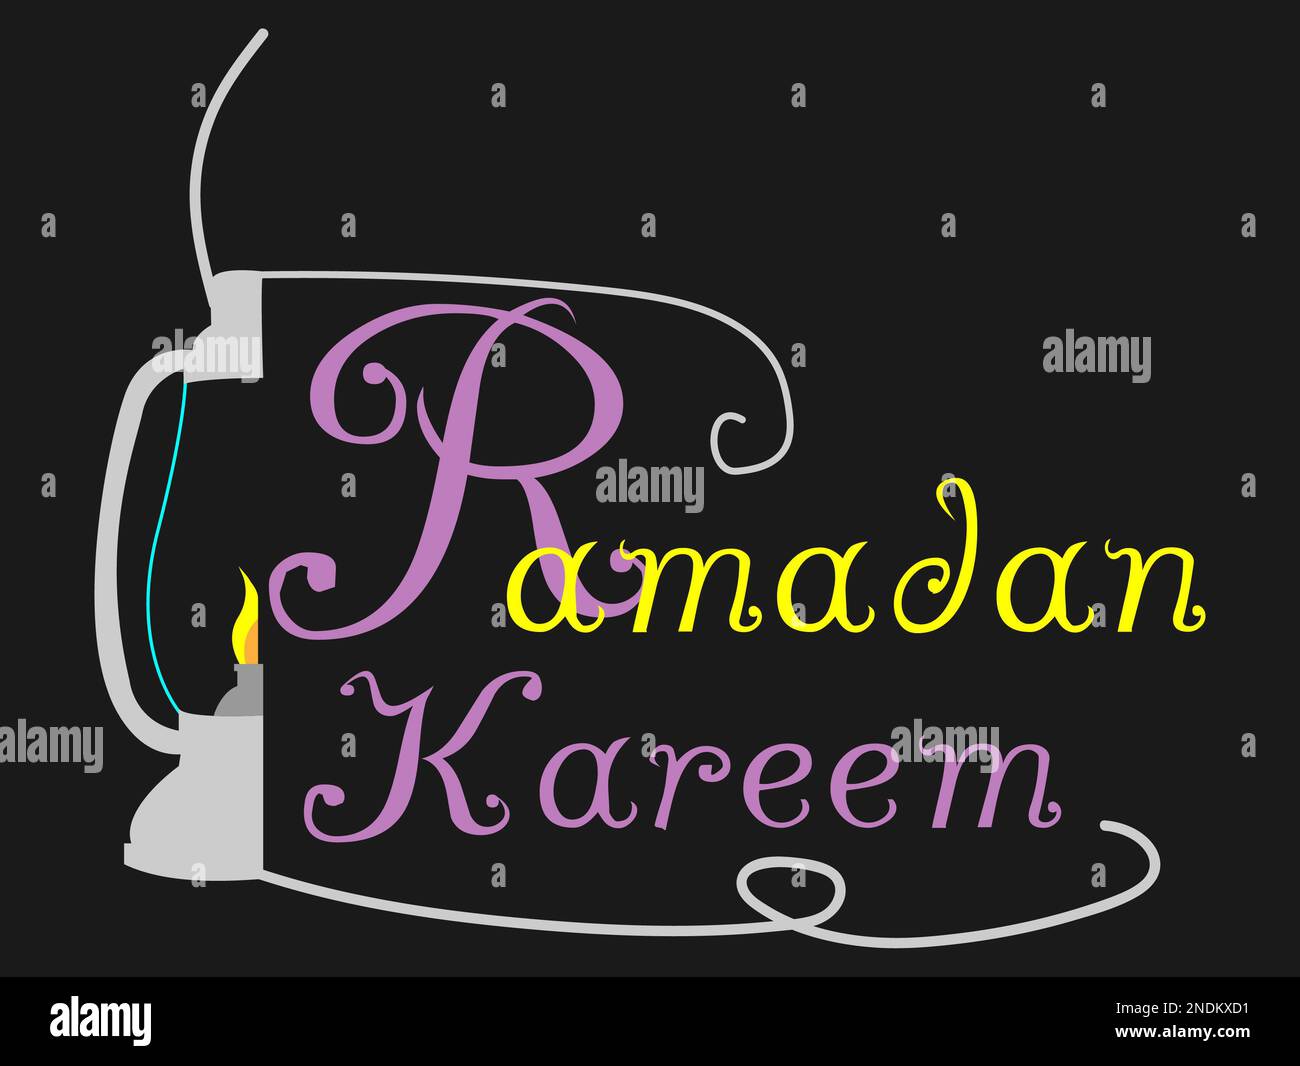 Texte de Ramadan Kareem avec lanterne, typographie, panneau et logo de lanterne Ramadan, publicité pour le ramadan, art islamique pour le mois du ramadan Banque D'Images